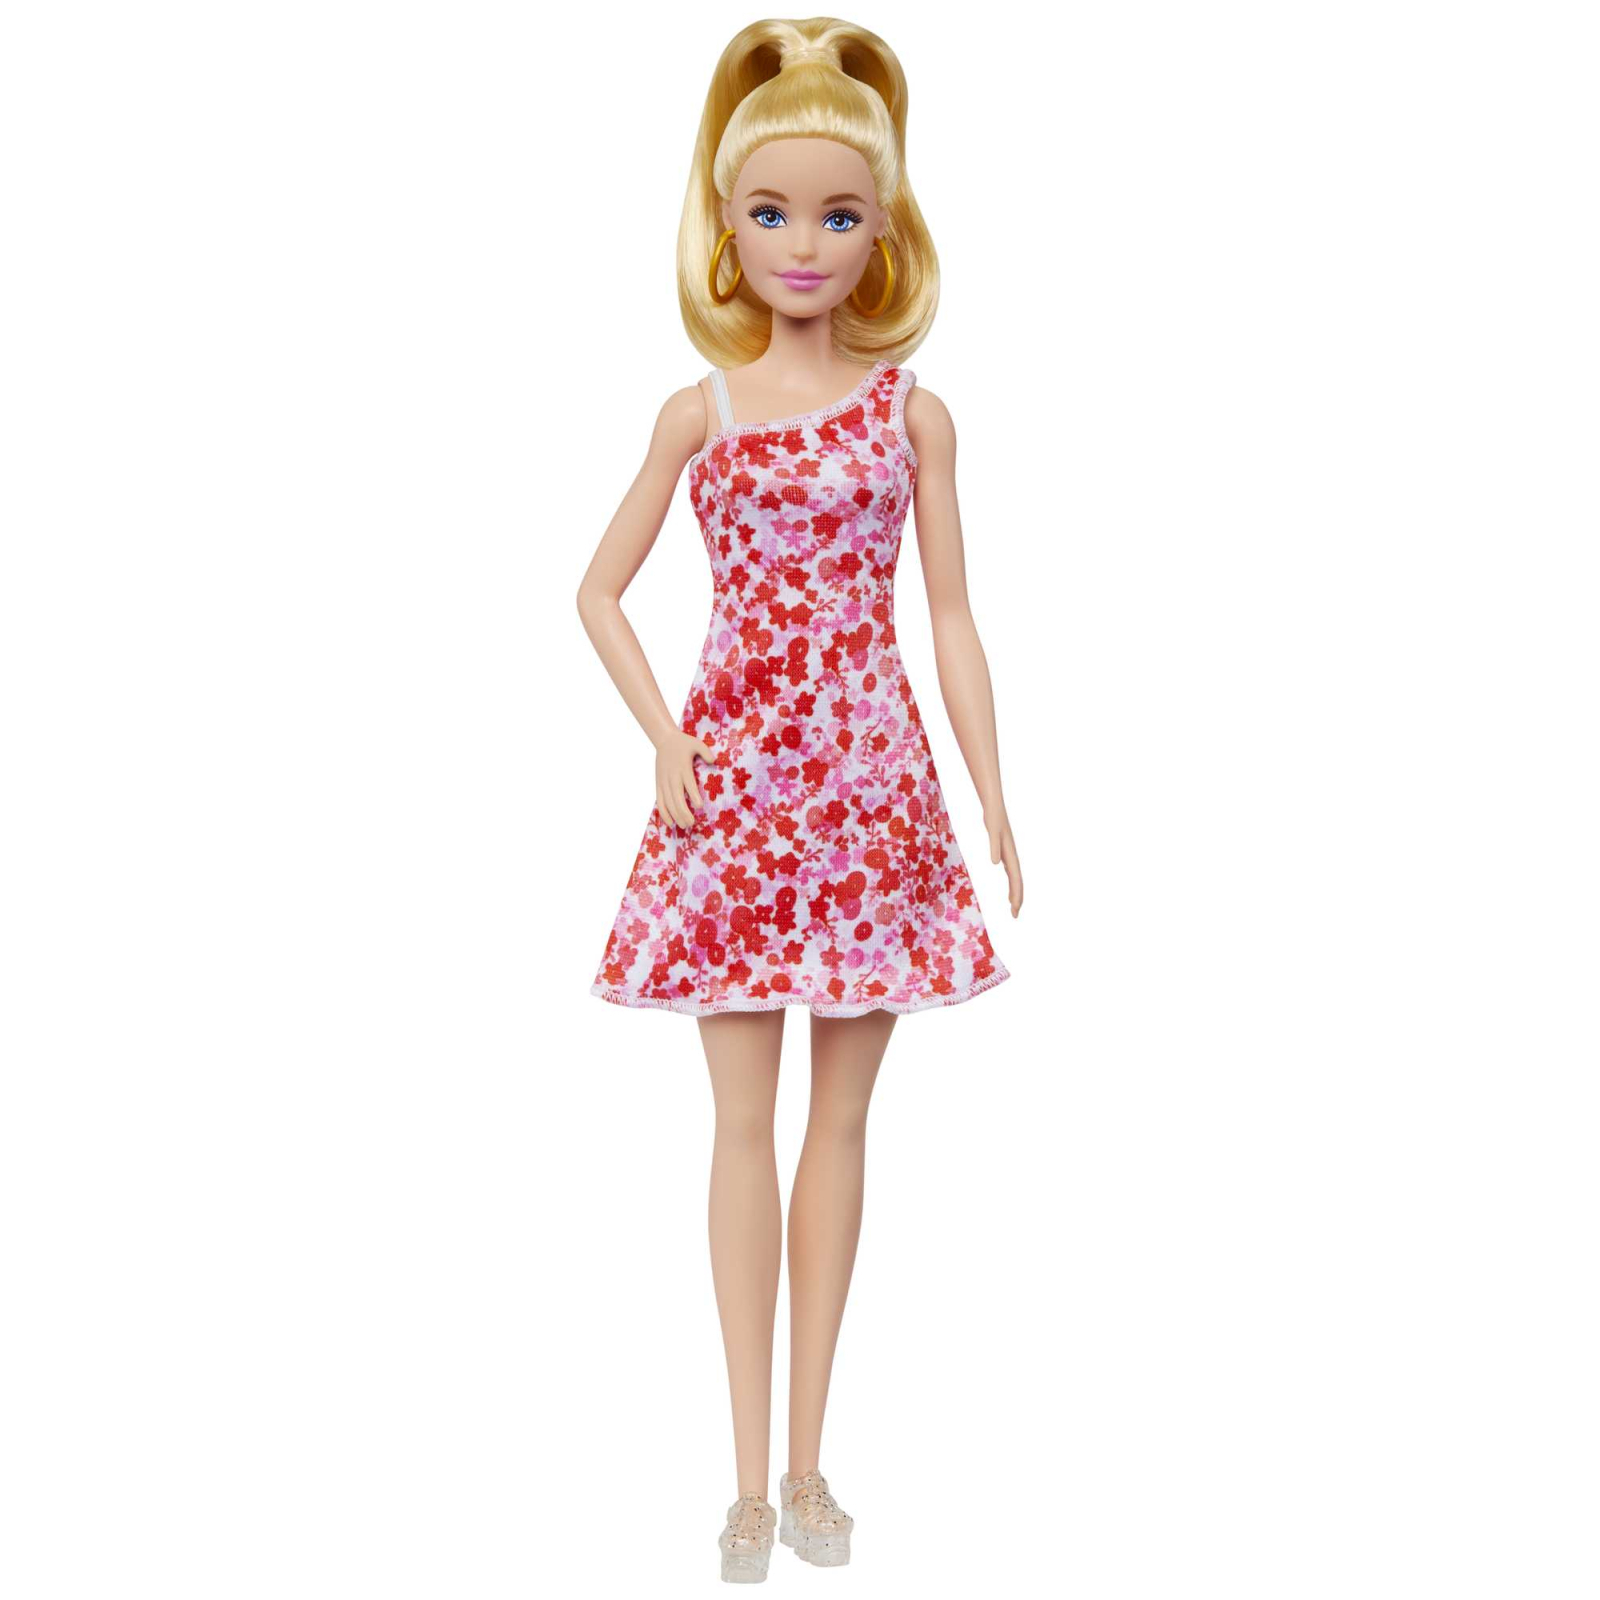 Кукла Barbie Fashionistas в сарафане в цветочный принт (HJT02)